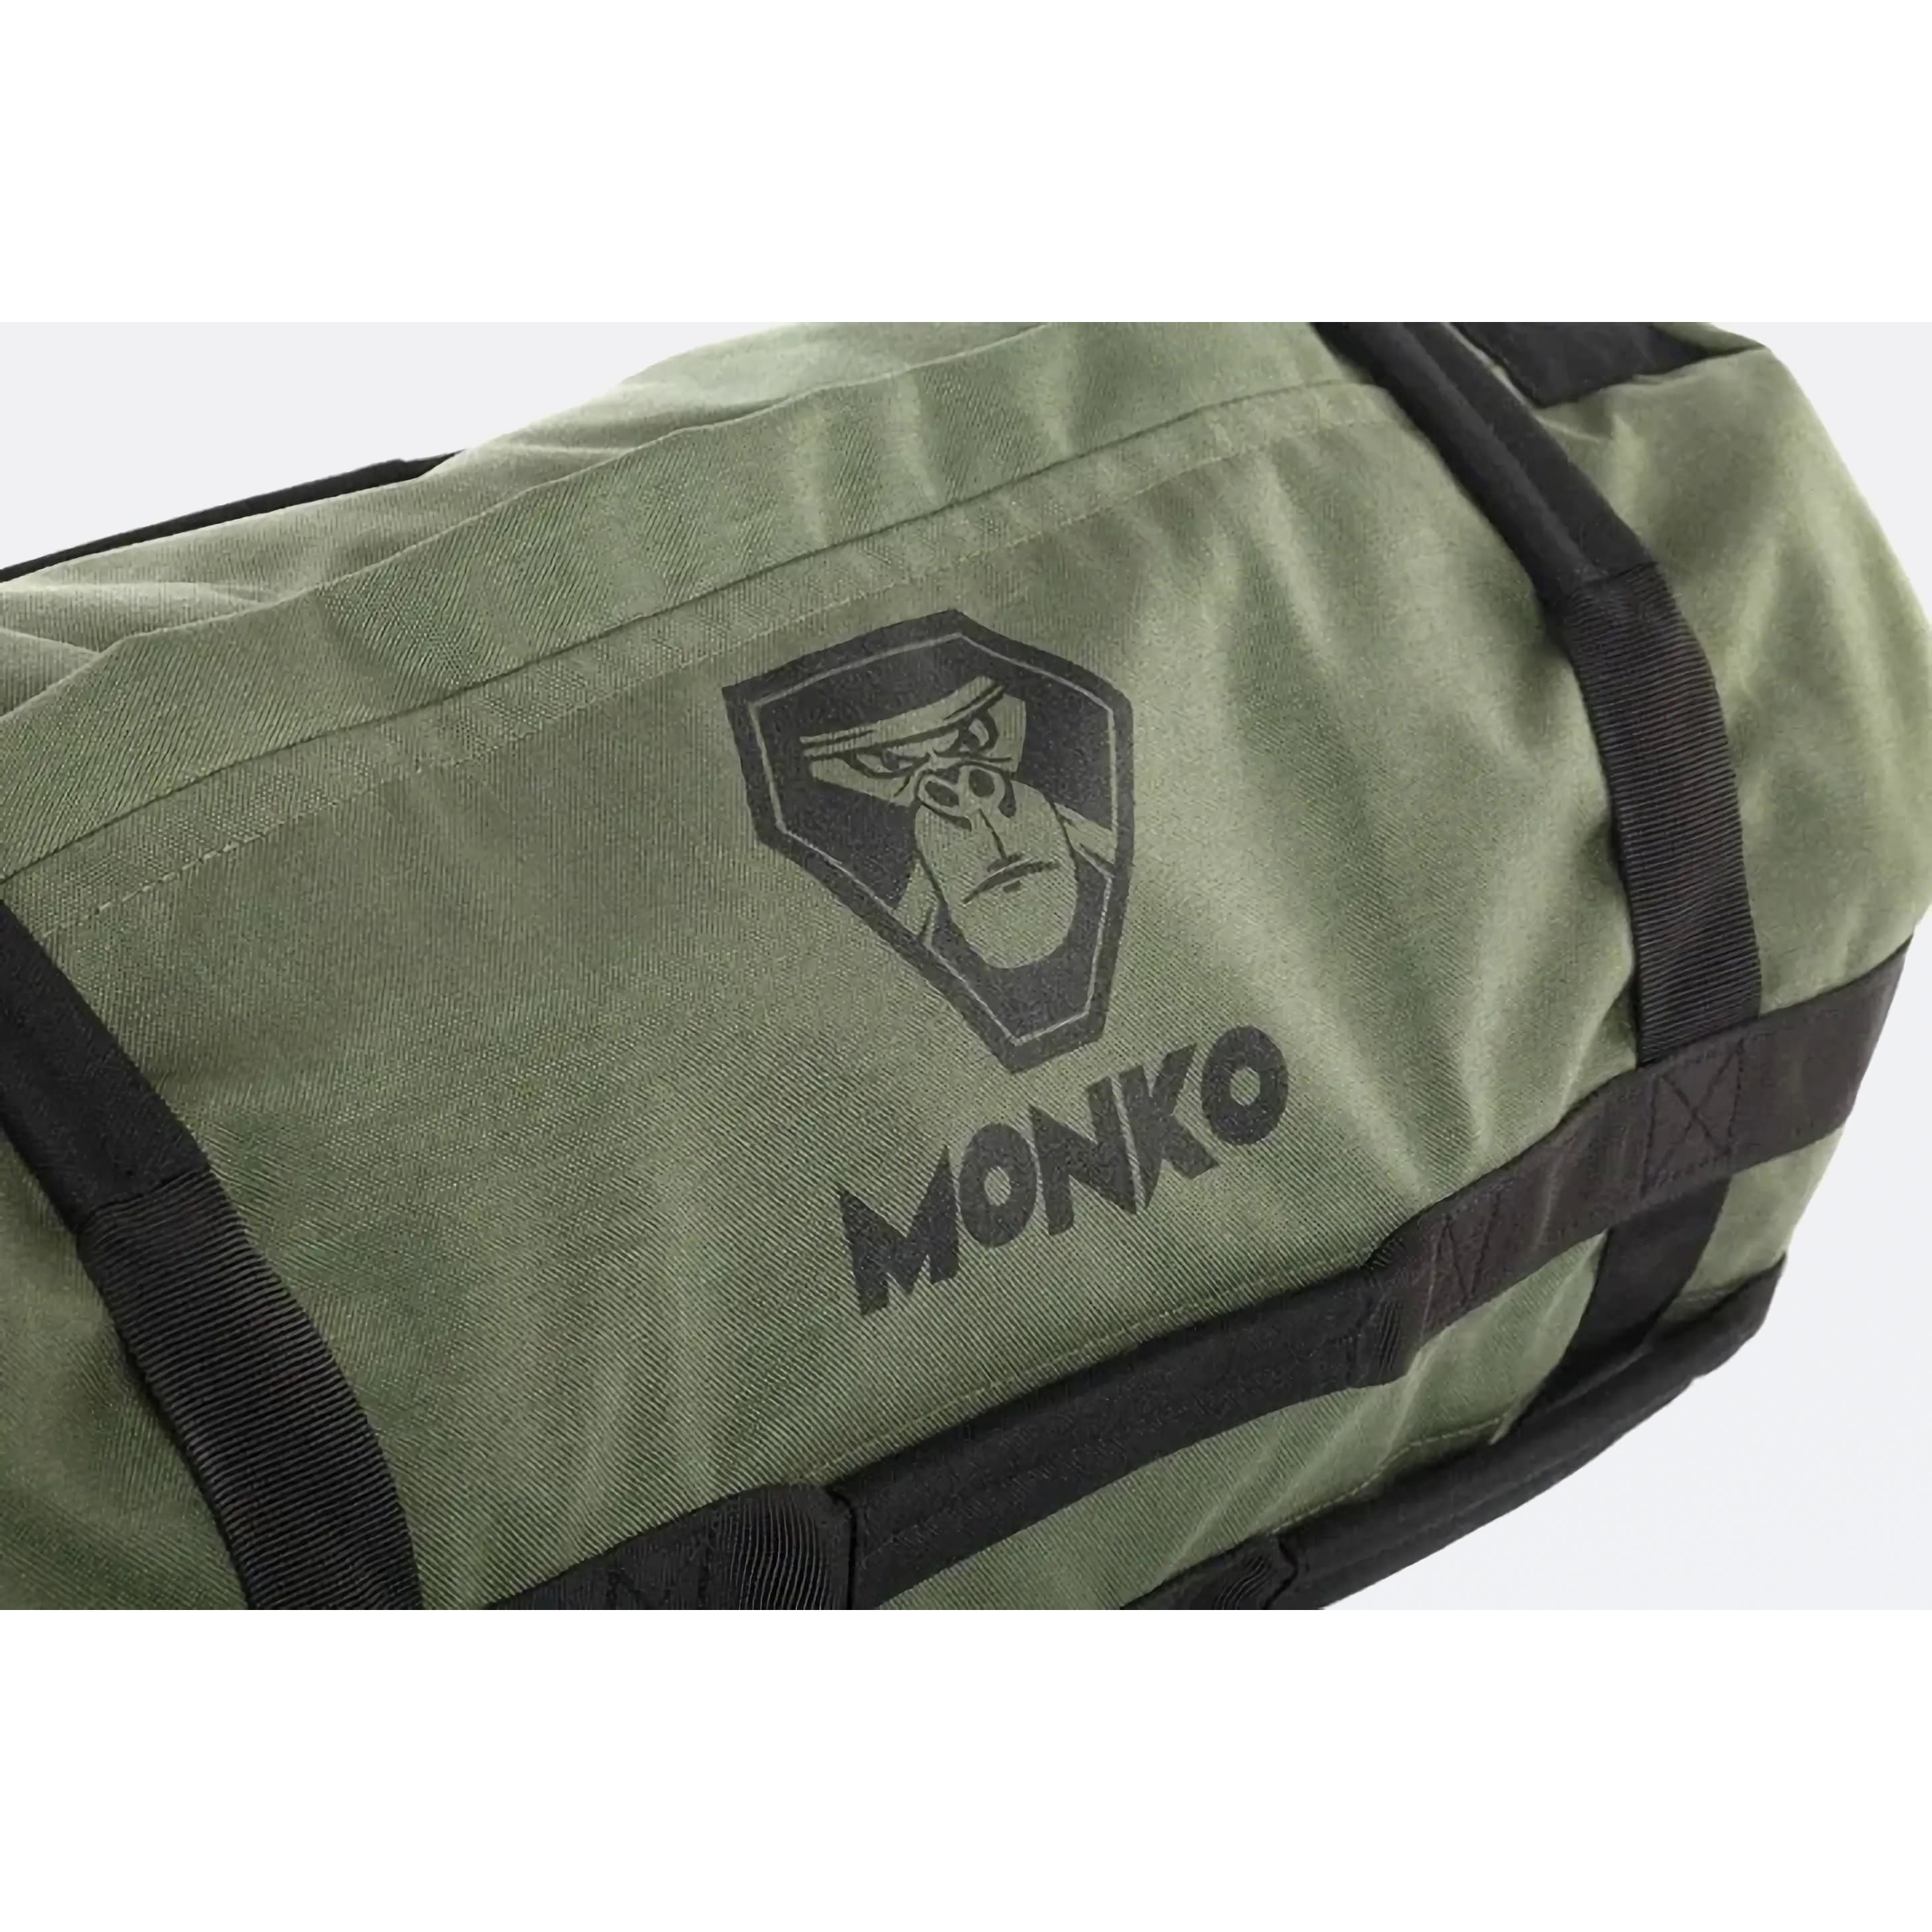 Сэндбэг Monko сумка для песка — SandBag кроссфит мешок для кроссфита